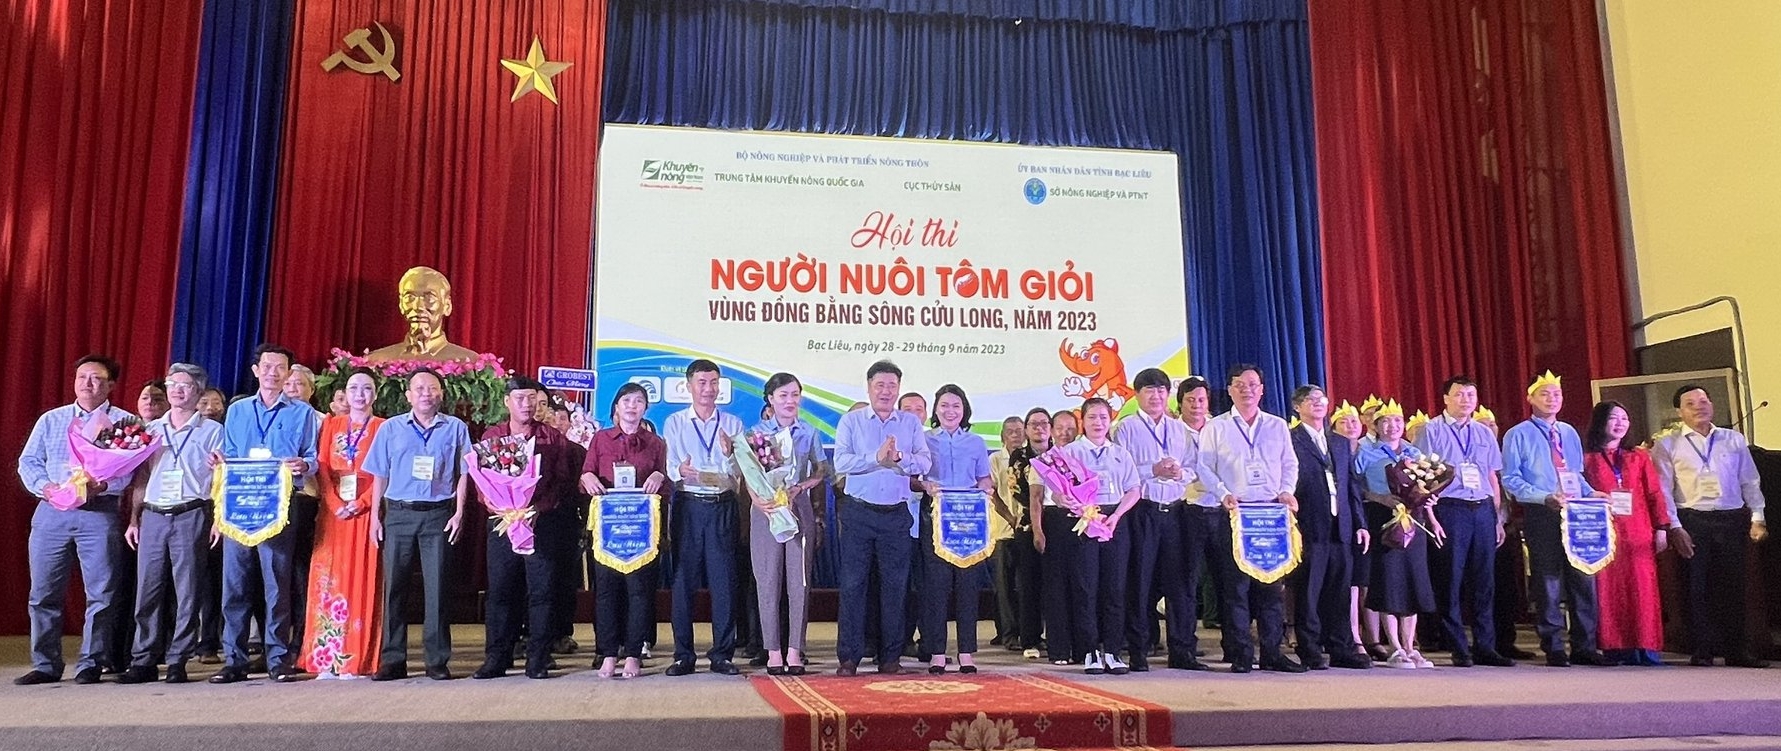 Trung tâm Khuyến nông Quốc gia và Cục Thủy sản (Bộ NN-PTNT) phối hợp với Sở NN-PTNT tỉnh Bạc Liêu tổ chức hội thi 'Người nuôi tôm giỏi vùng ĐBSCL' năm 2023. Ảnh: Trọng Linh.